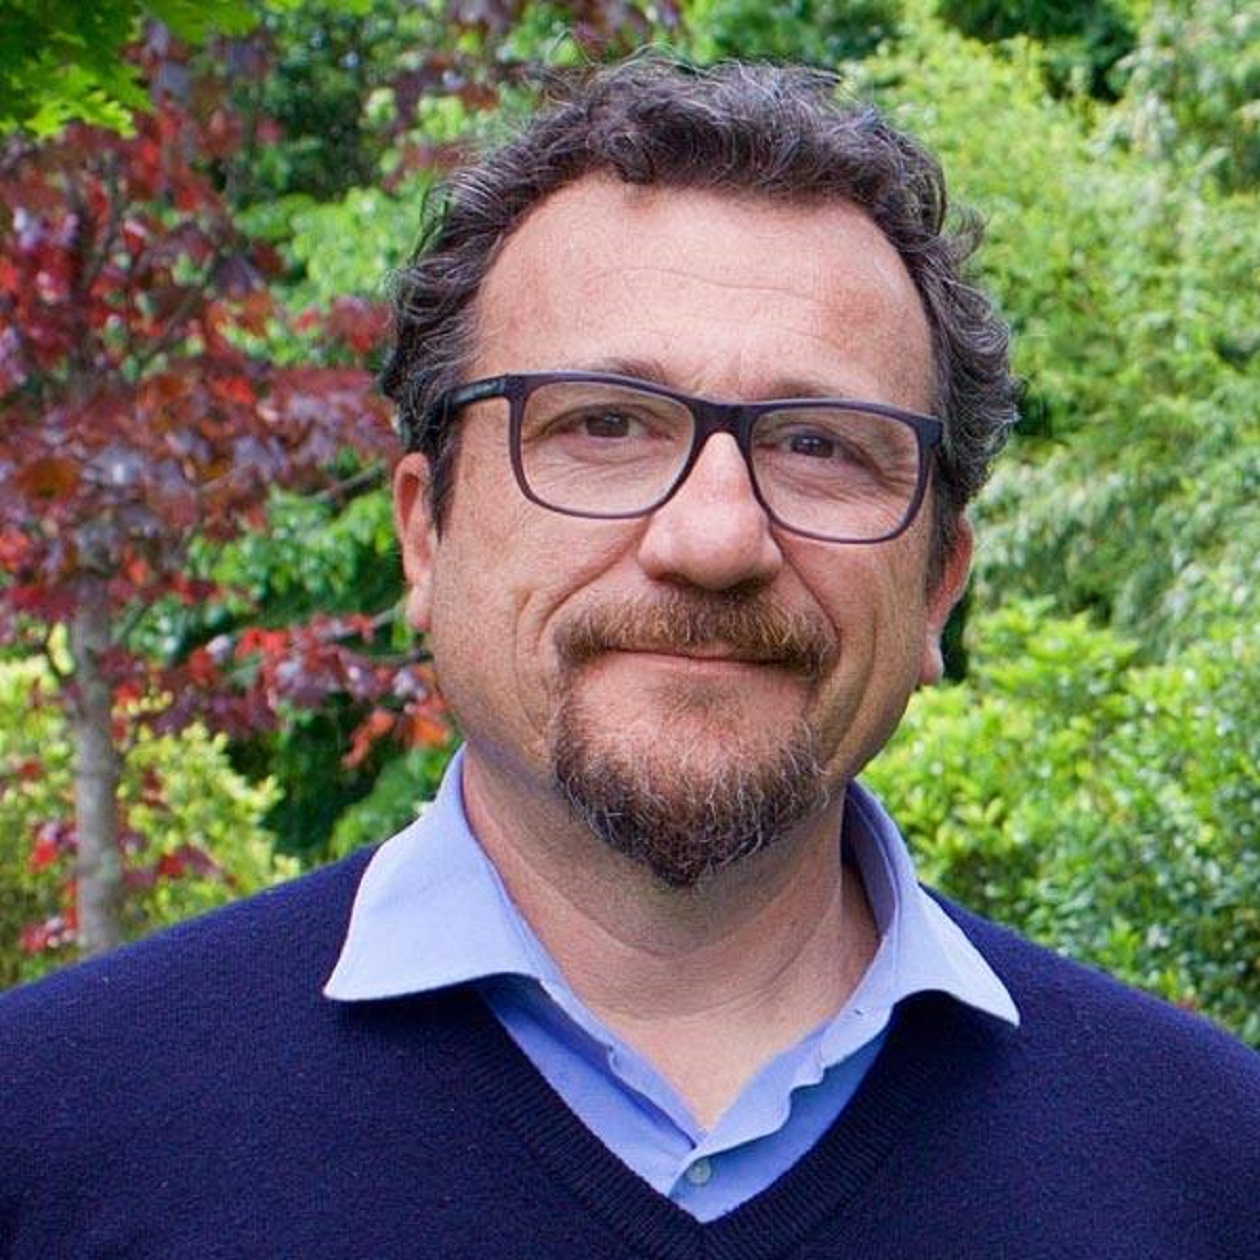 Verde pubblico, l’allarme di Mati (Confagricoltura Toscana): “Troppi errori e burocrazia nella manutenzione, serve cambio radicale”